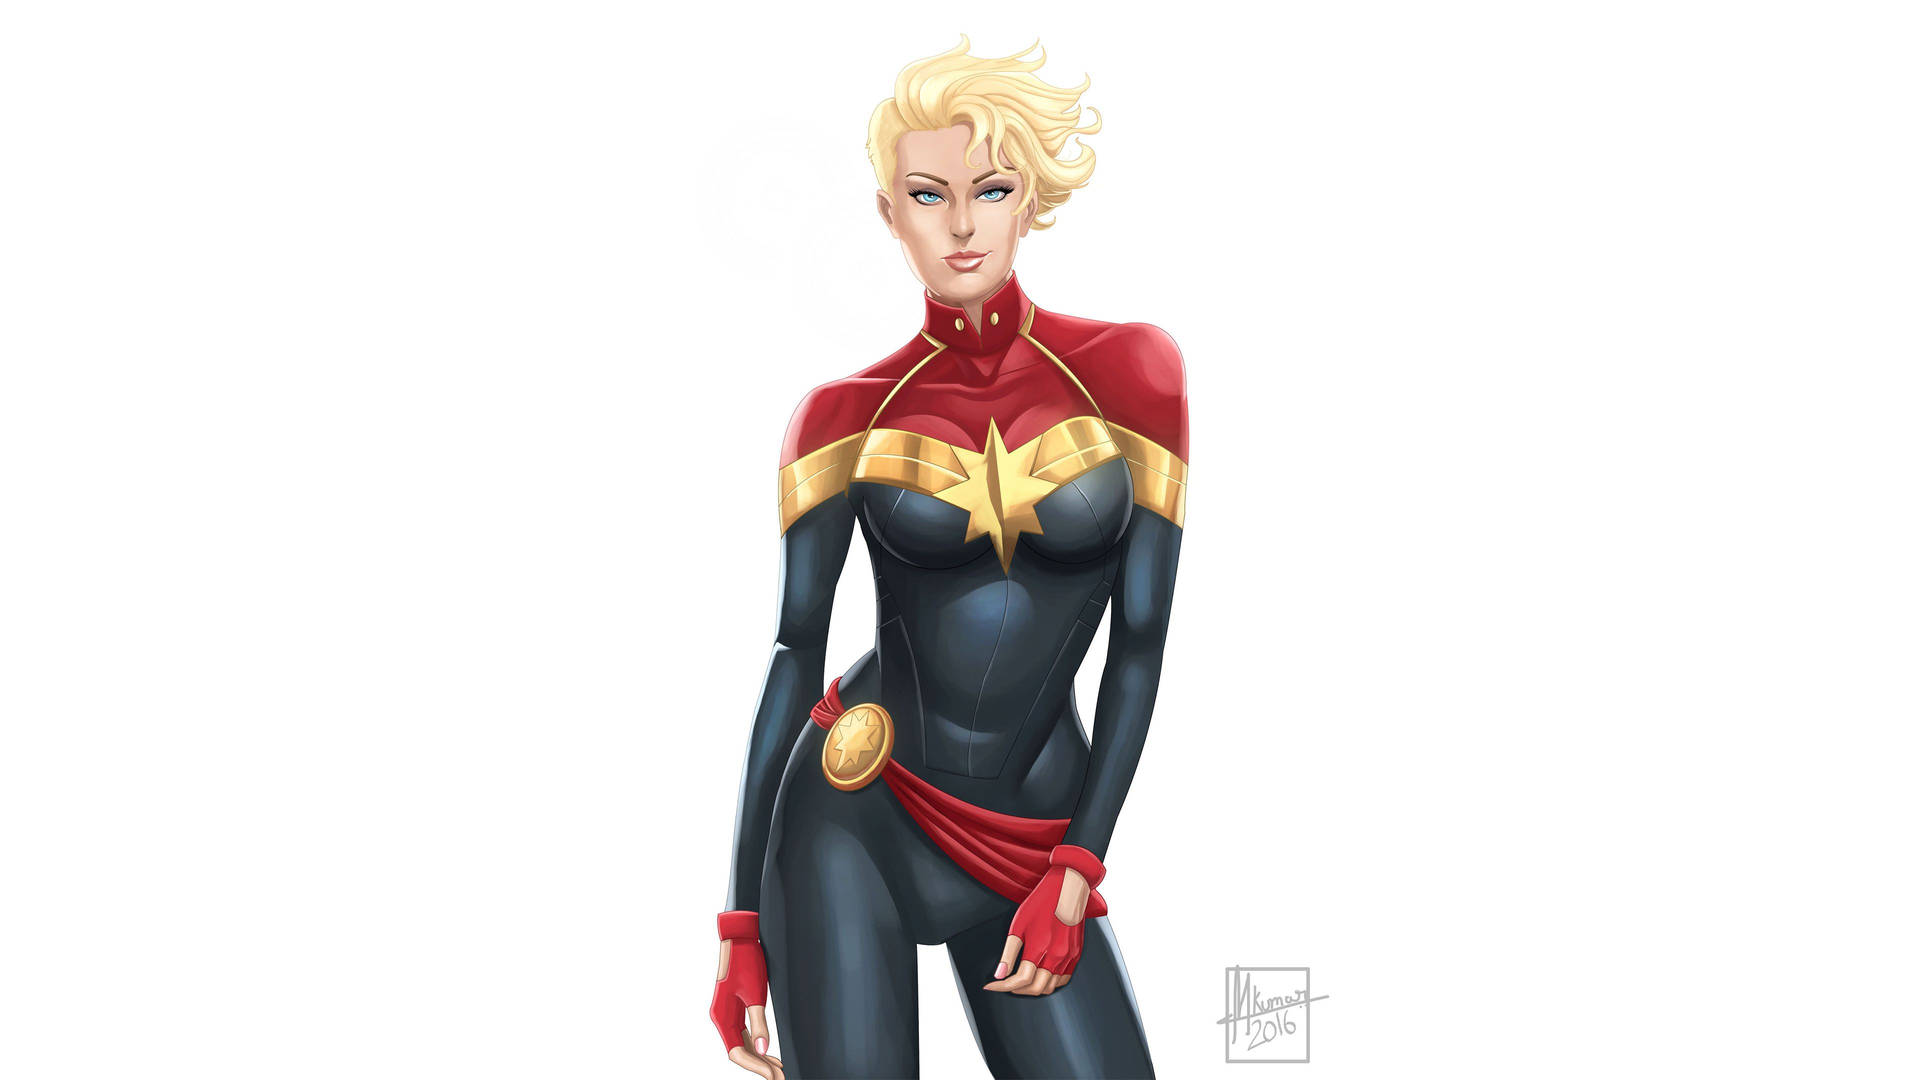 A sexy digital fan art of Captain Marvel.